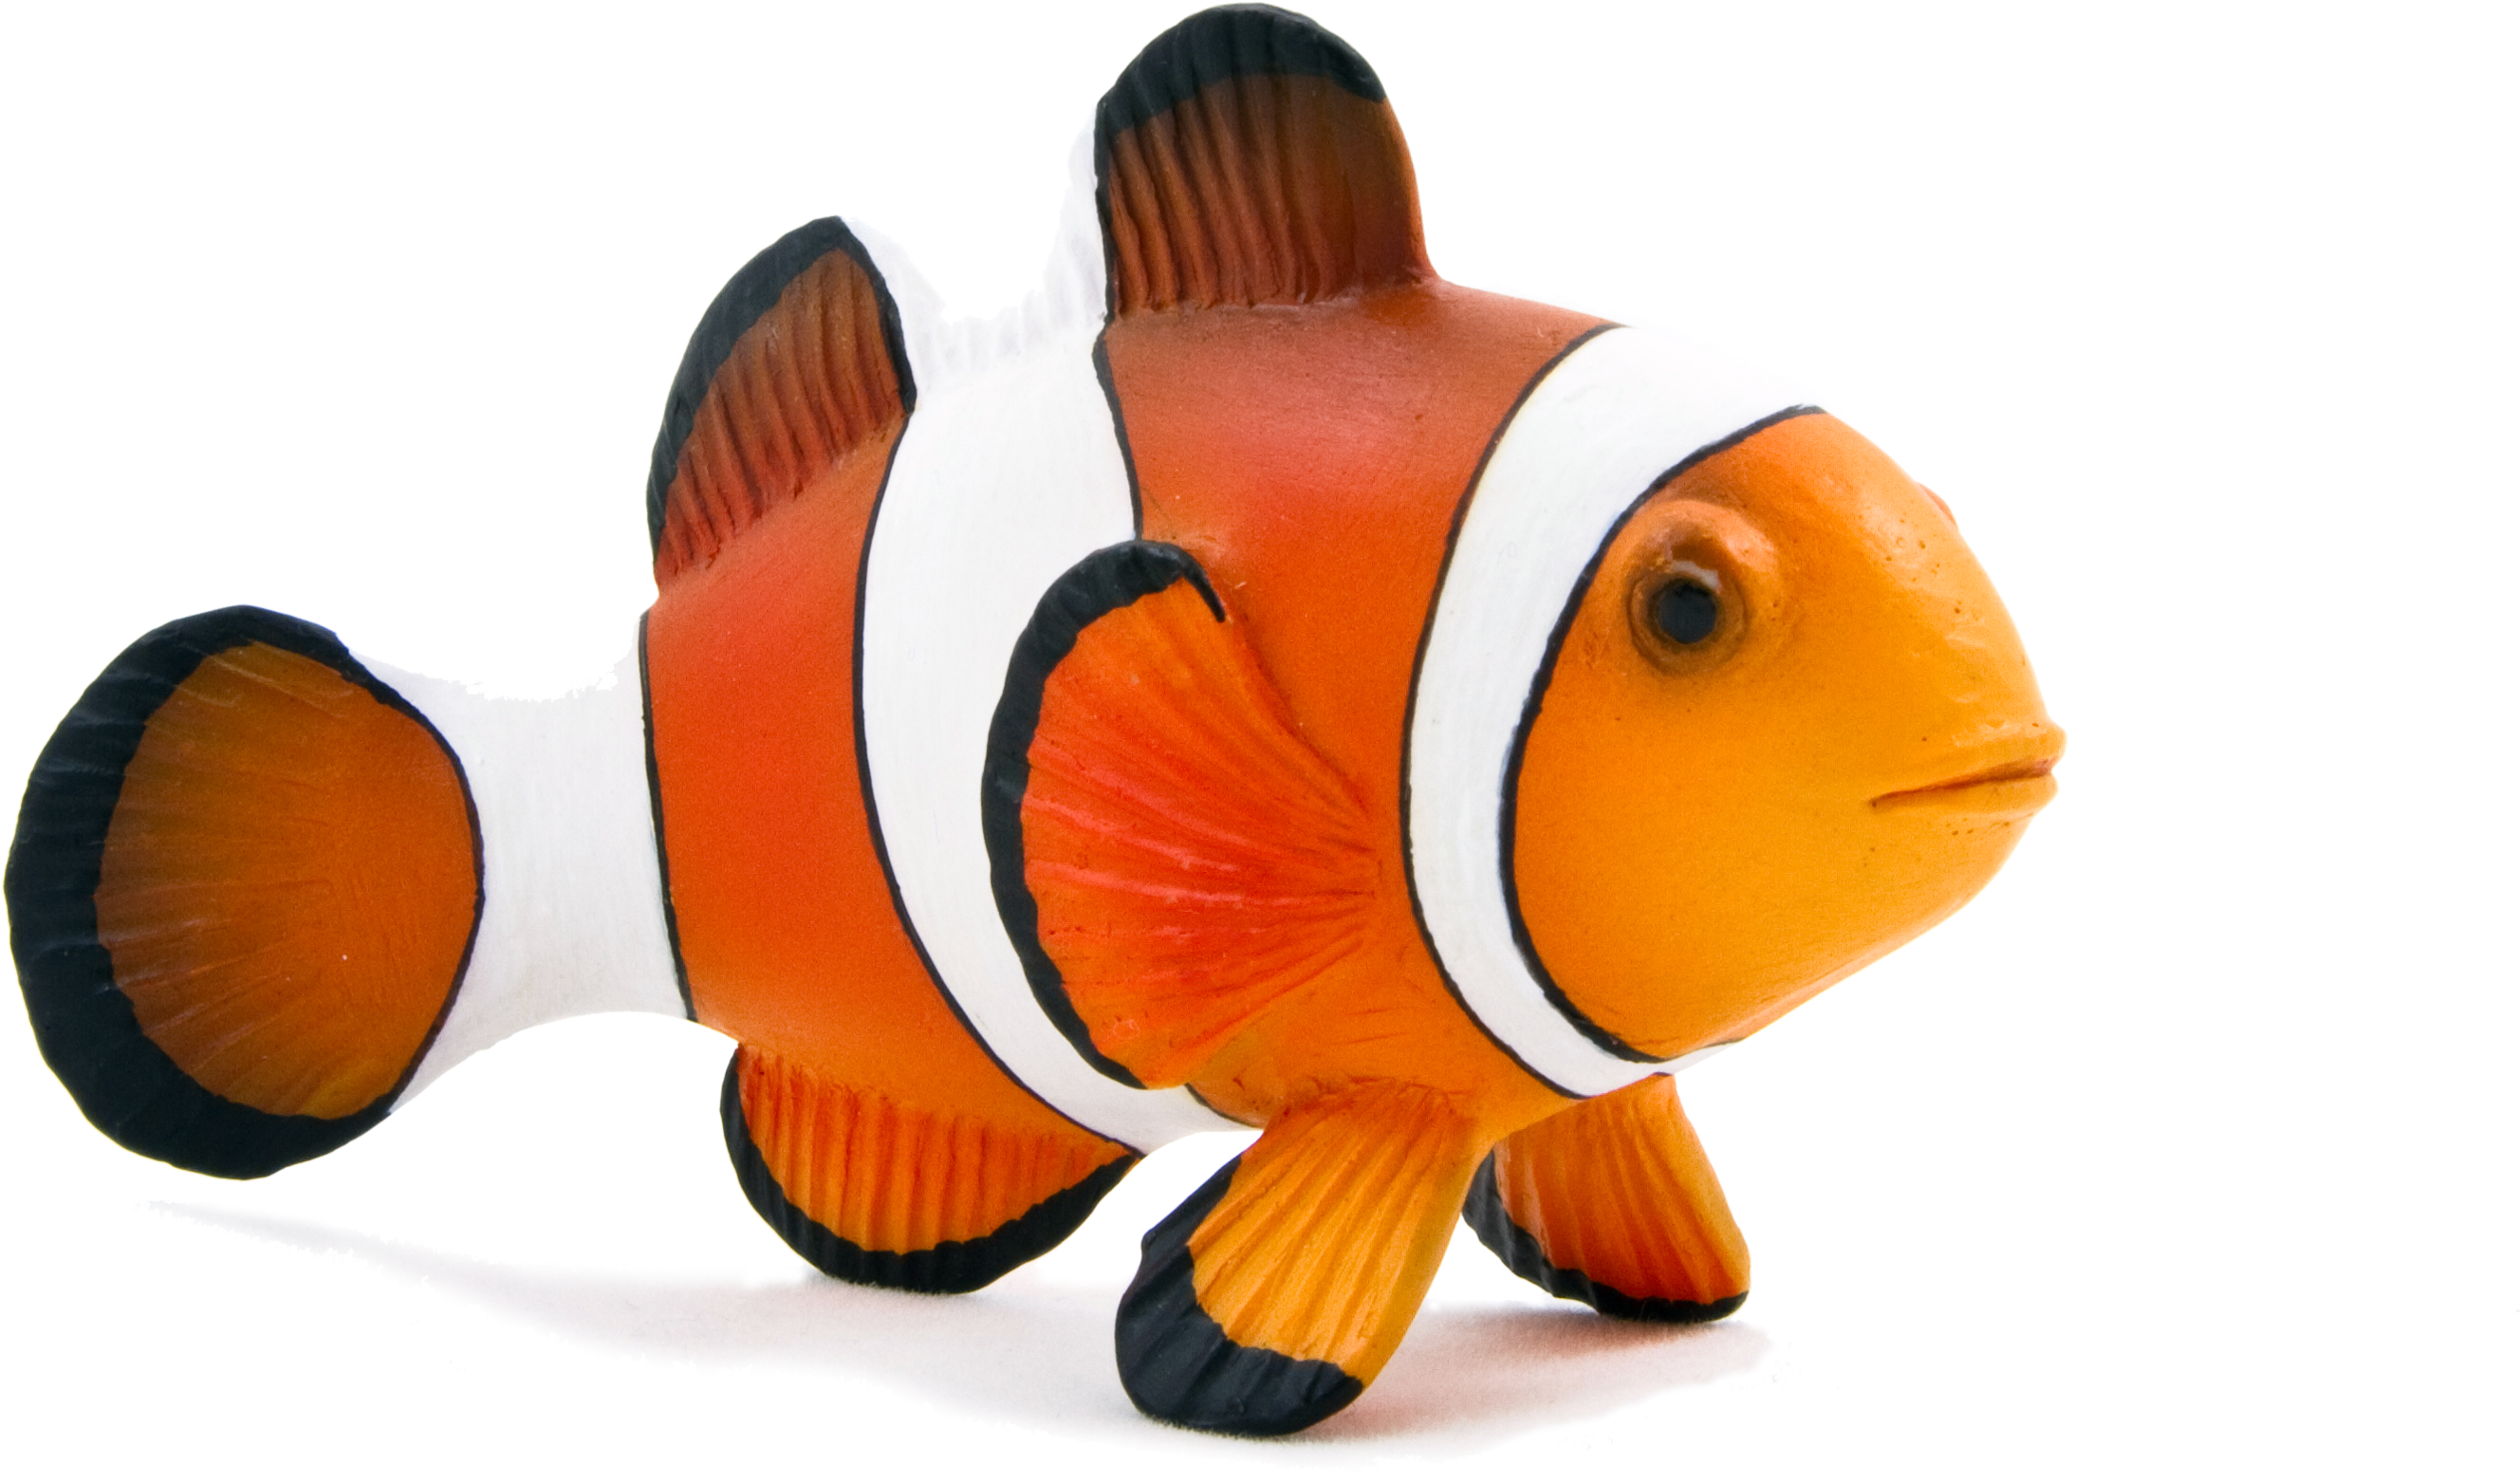 Animal Planet Clown Fish - Animal Planet Clown Fish (3543x2572)